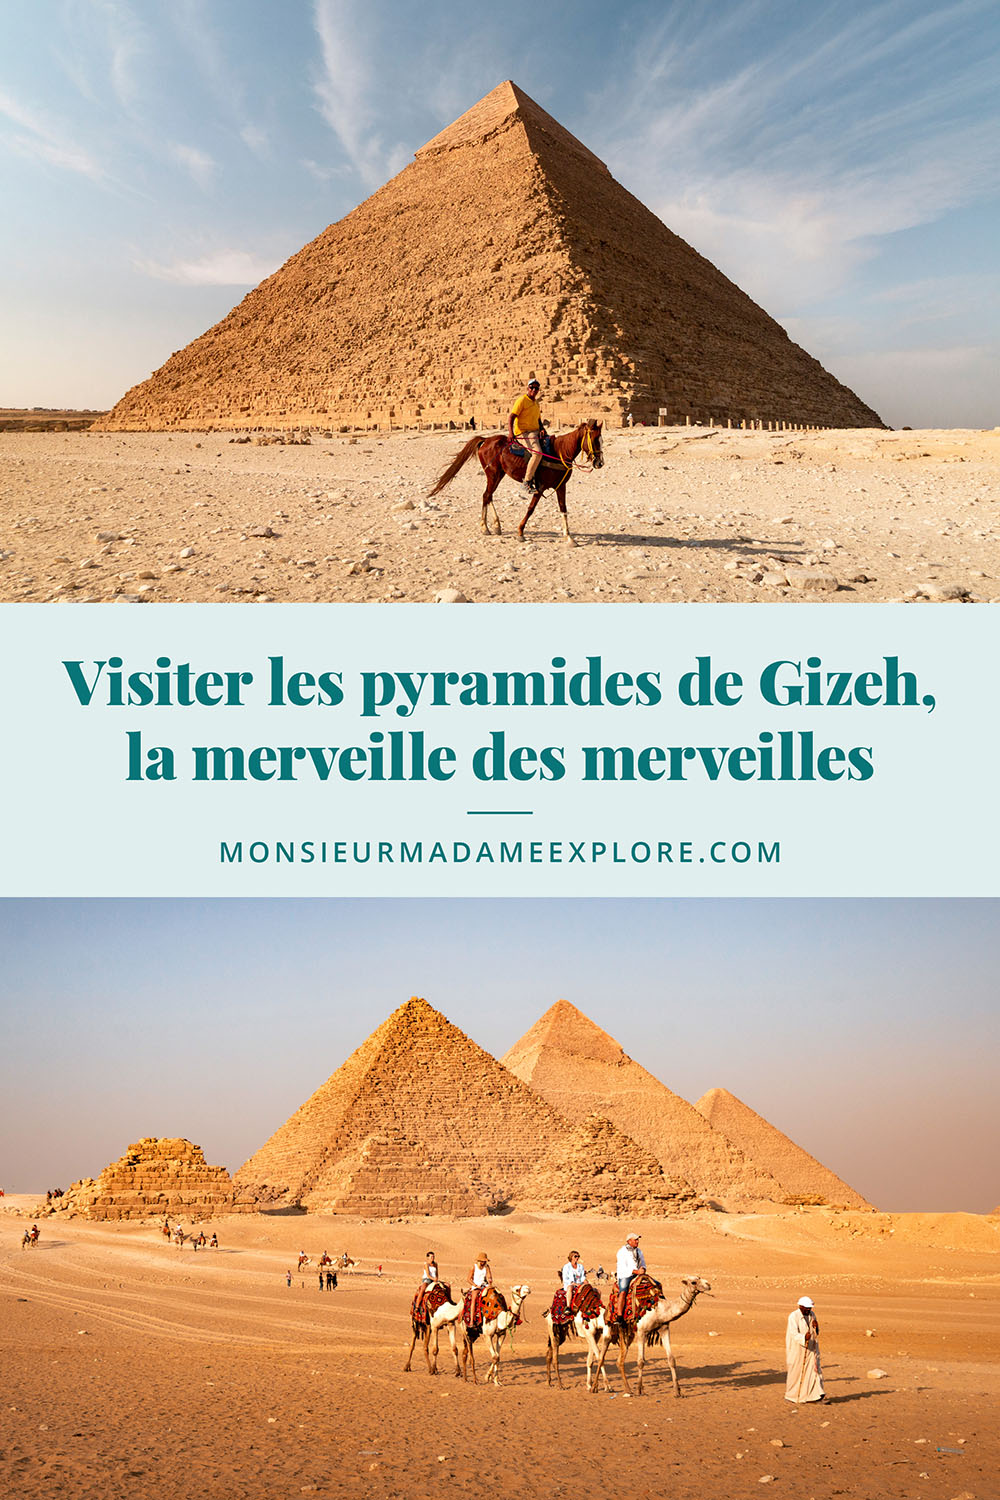 Visiter les pyramides de Gizeh, la merveille des merveilles, Monsieur+Madame Explore, Blogue de voyage, Égypte / Visiting Pyramids of Gizeh, Egypt